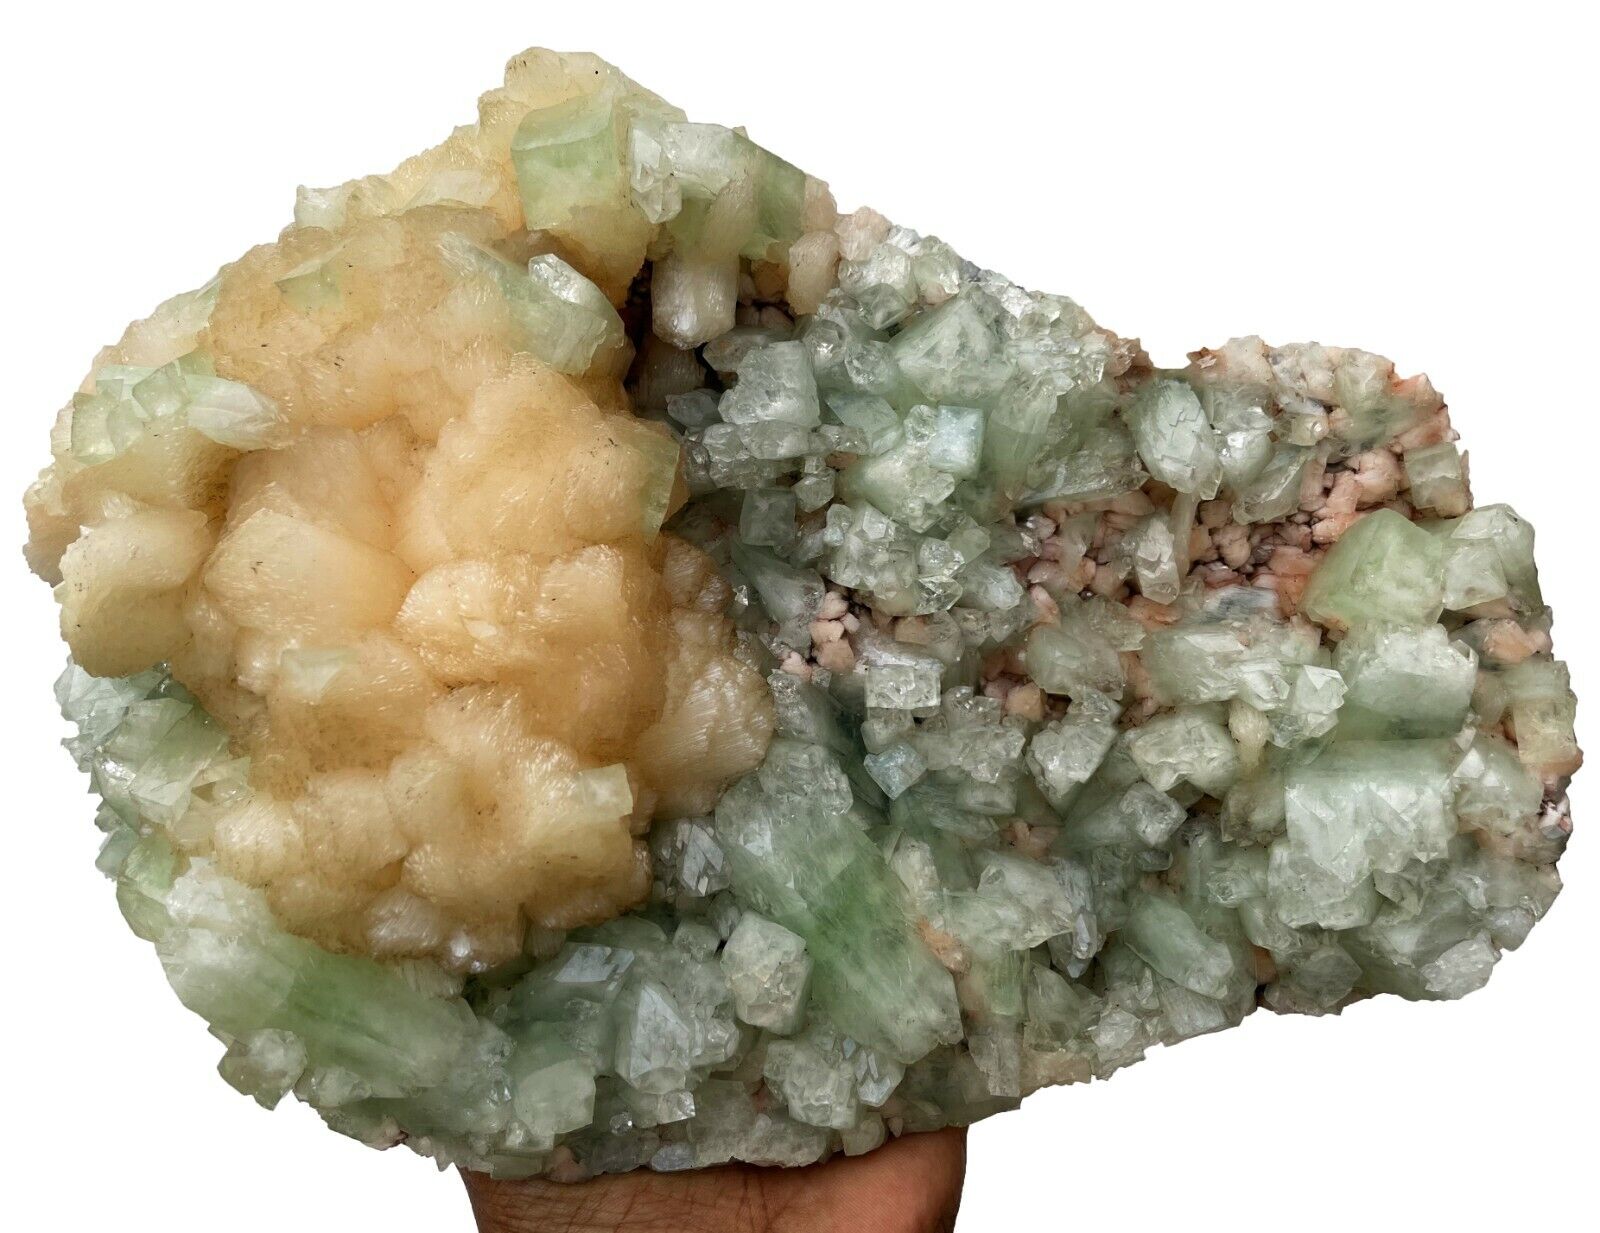 Light Green Apophyllite With Stilbite On Heulandite Crystals, Mineral Specimens